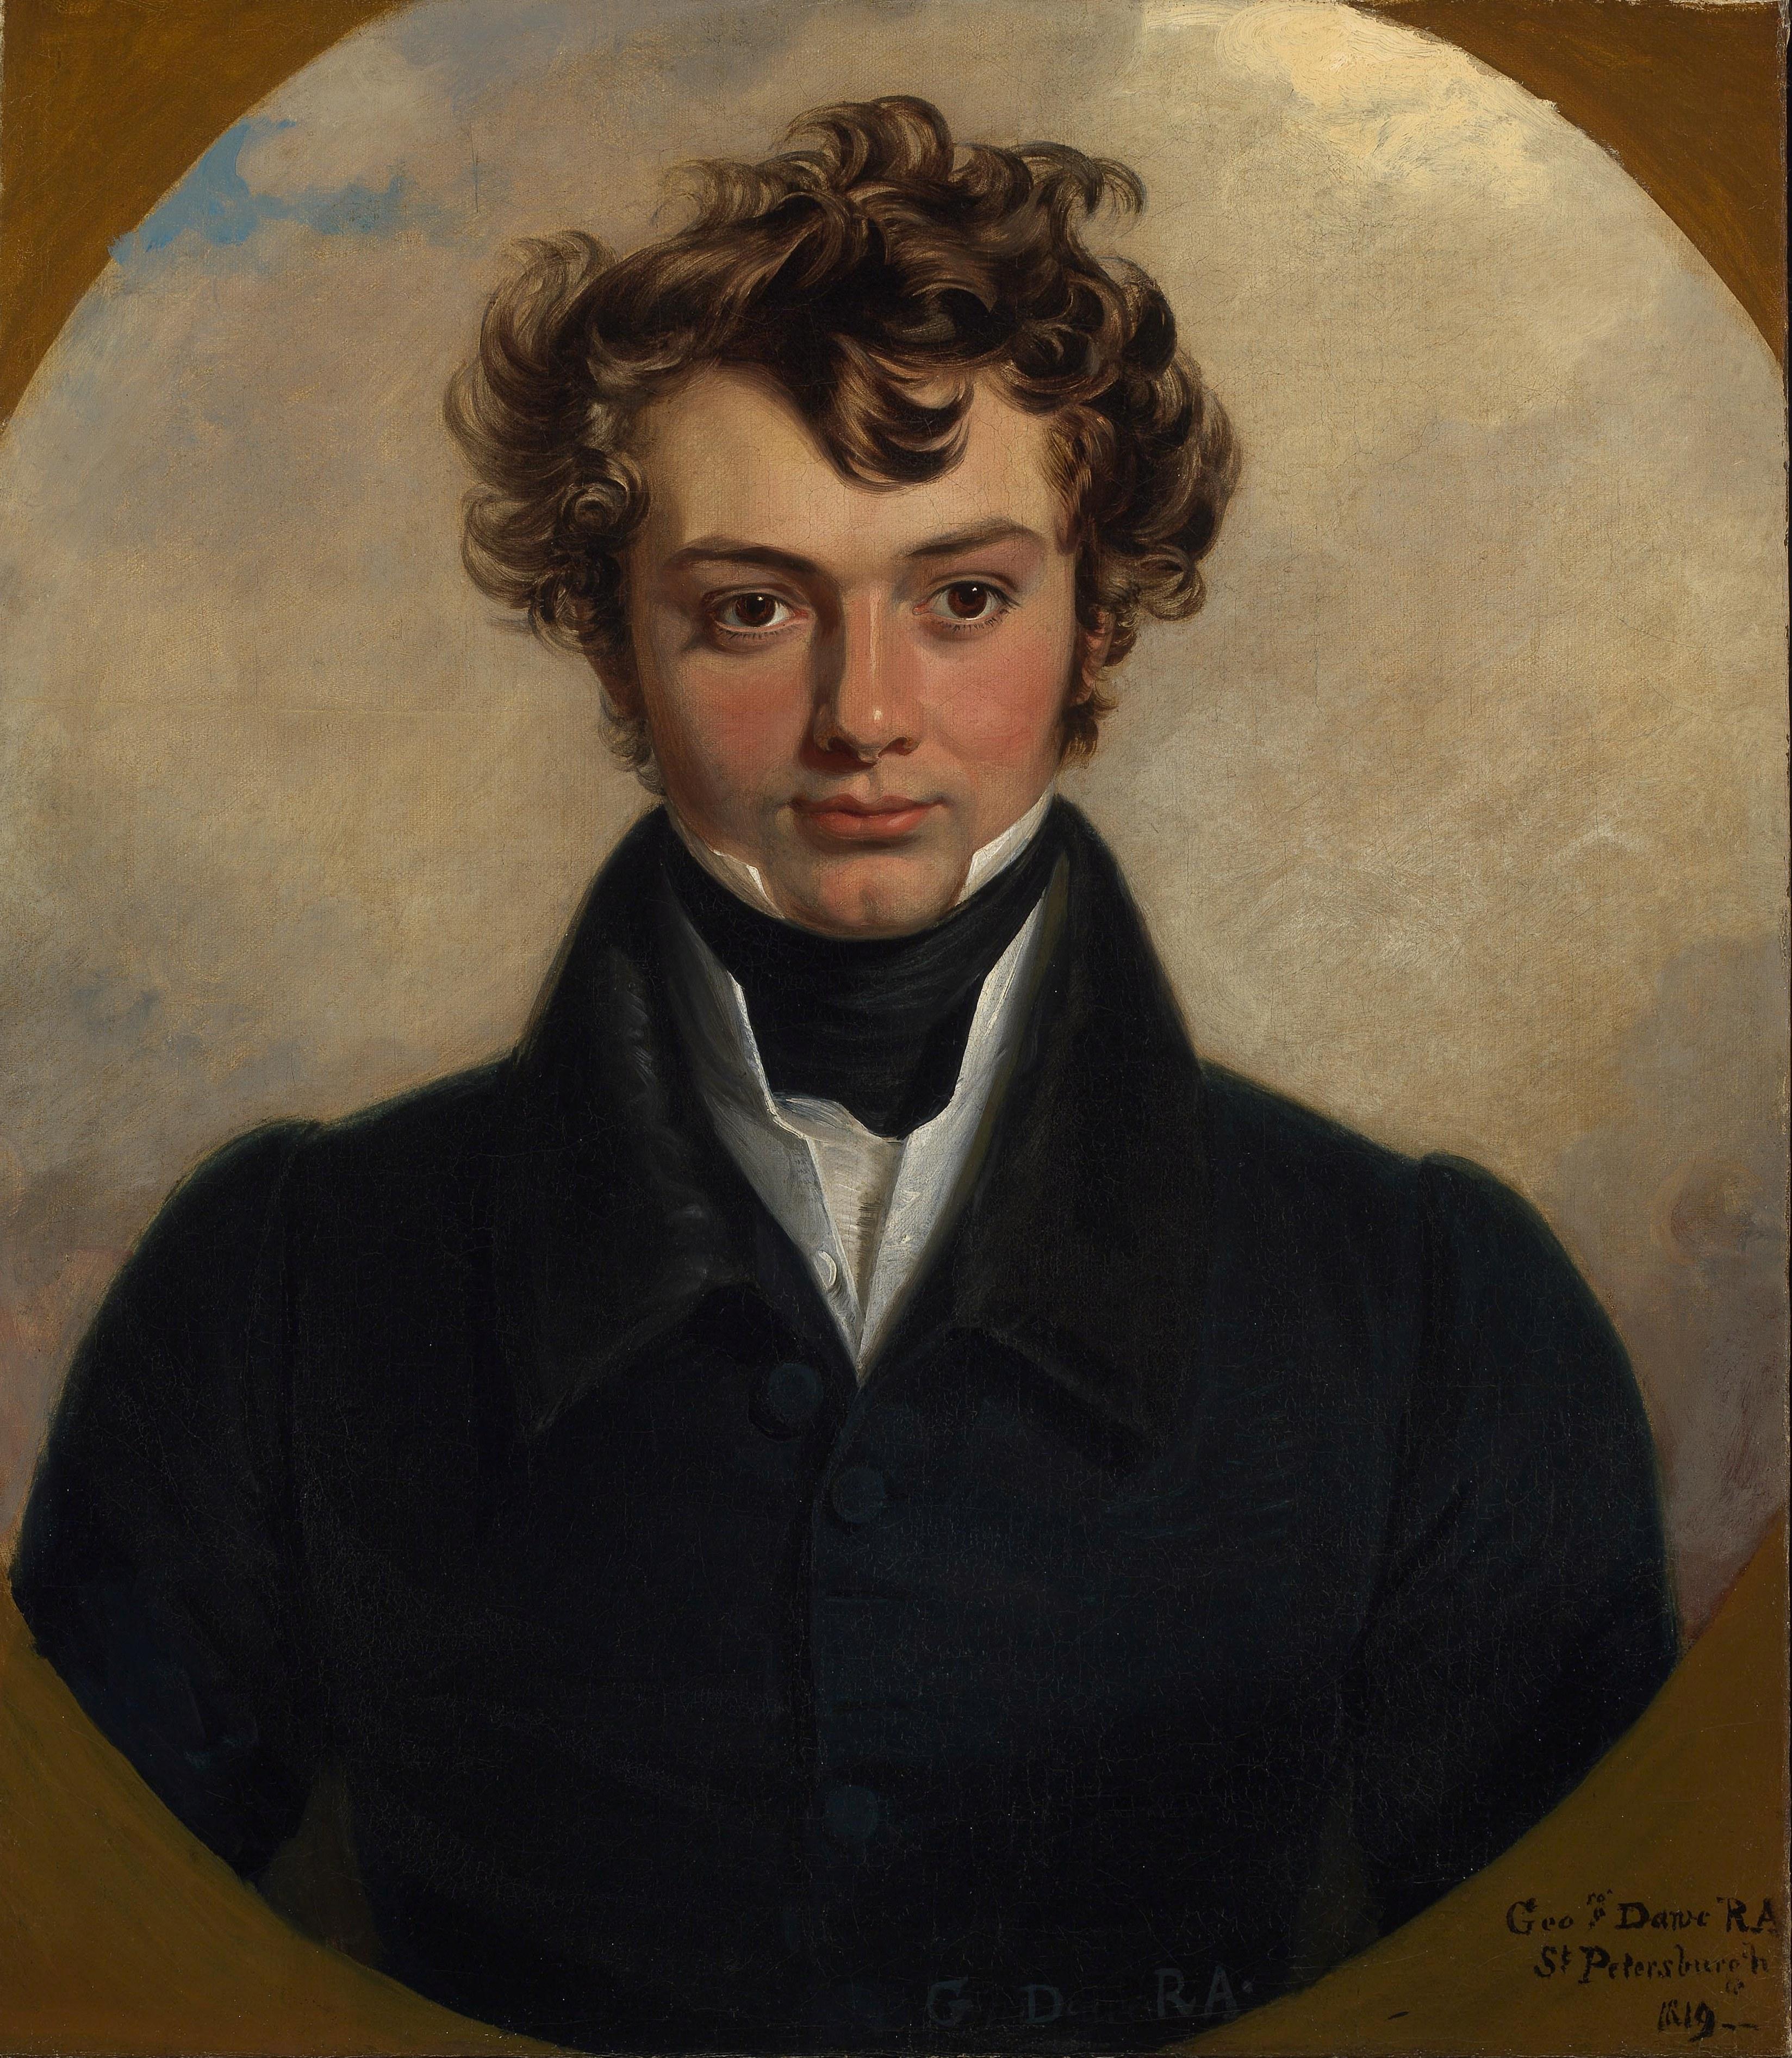 Portrait du 19e siècle peint à Saint-Pétersbourg en 1819 - Painting de George Dawe